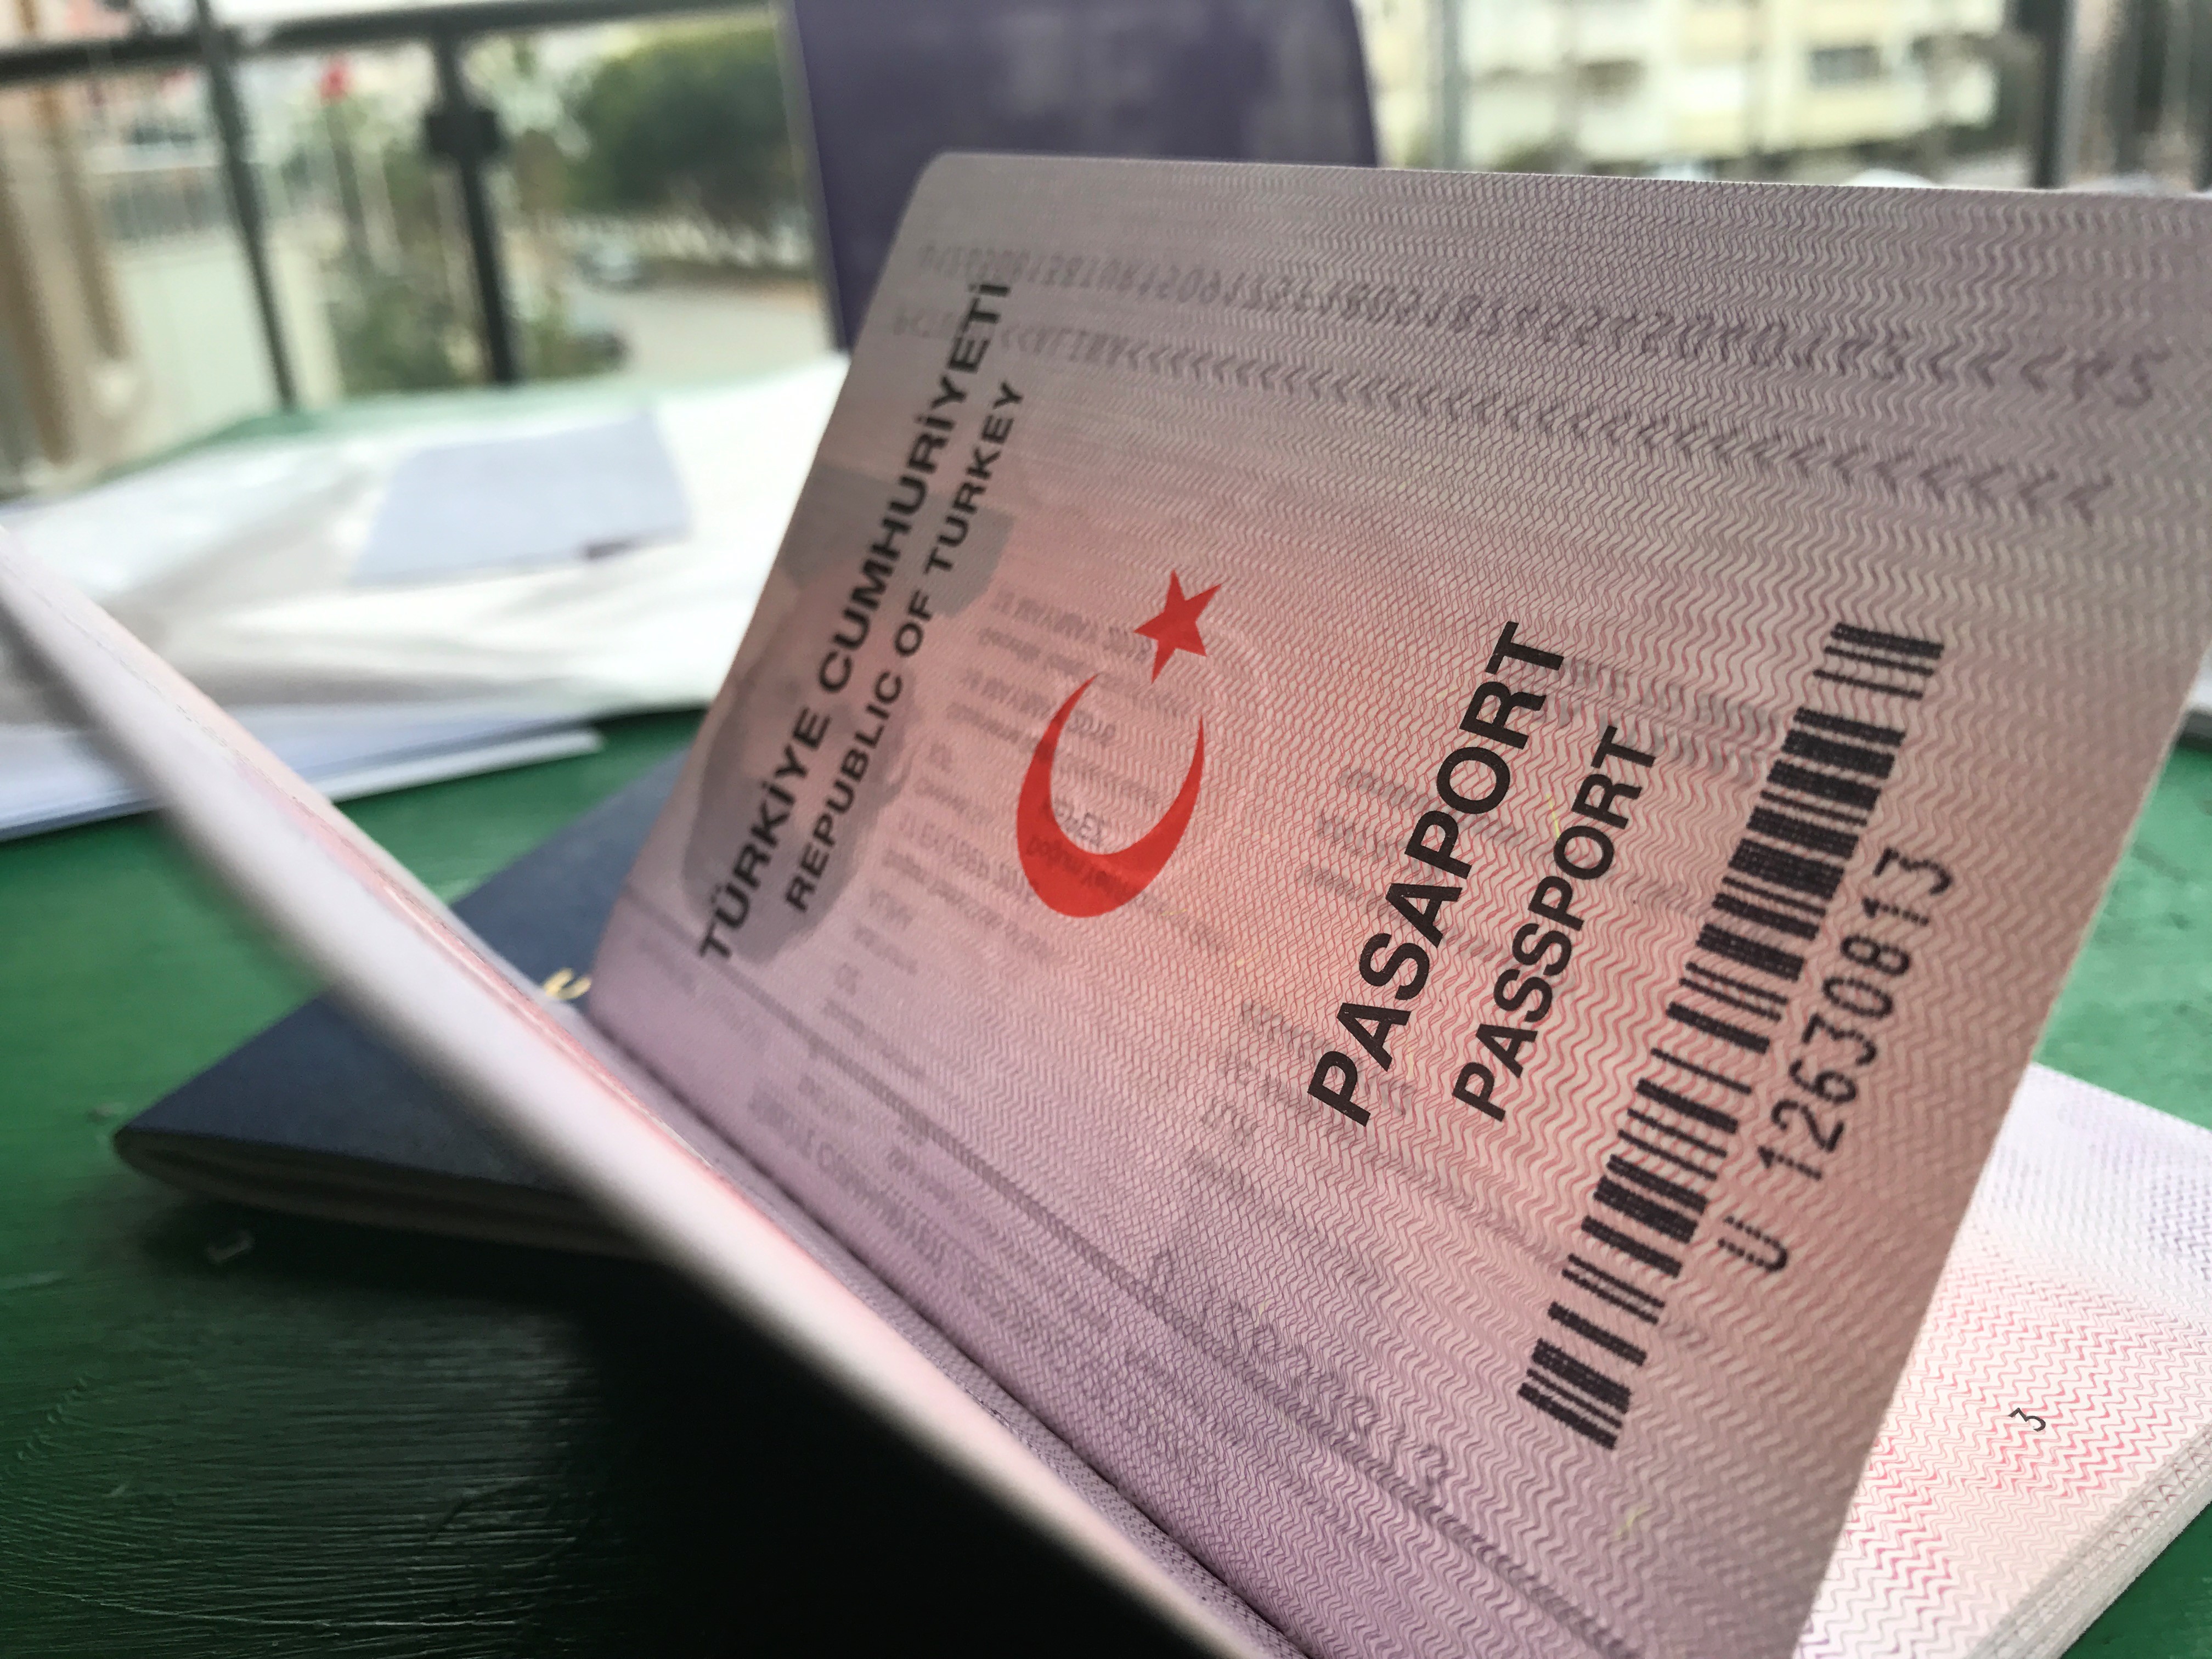  На какой срок делается виза в Россию для турецкого гражданина?  